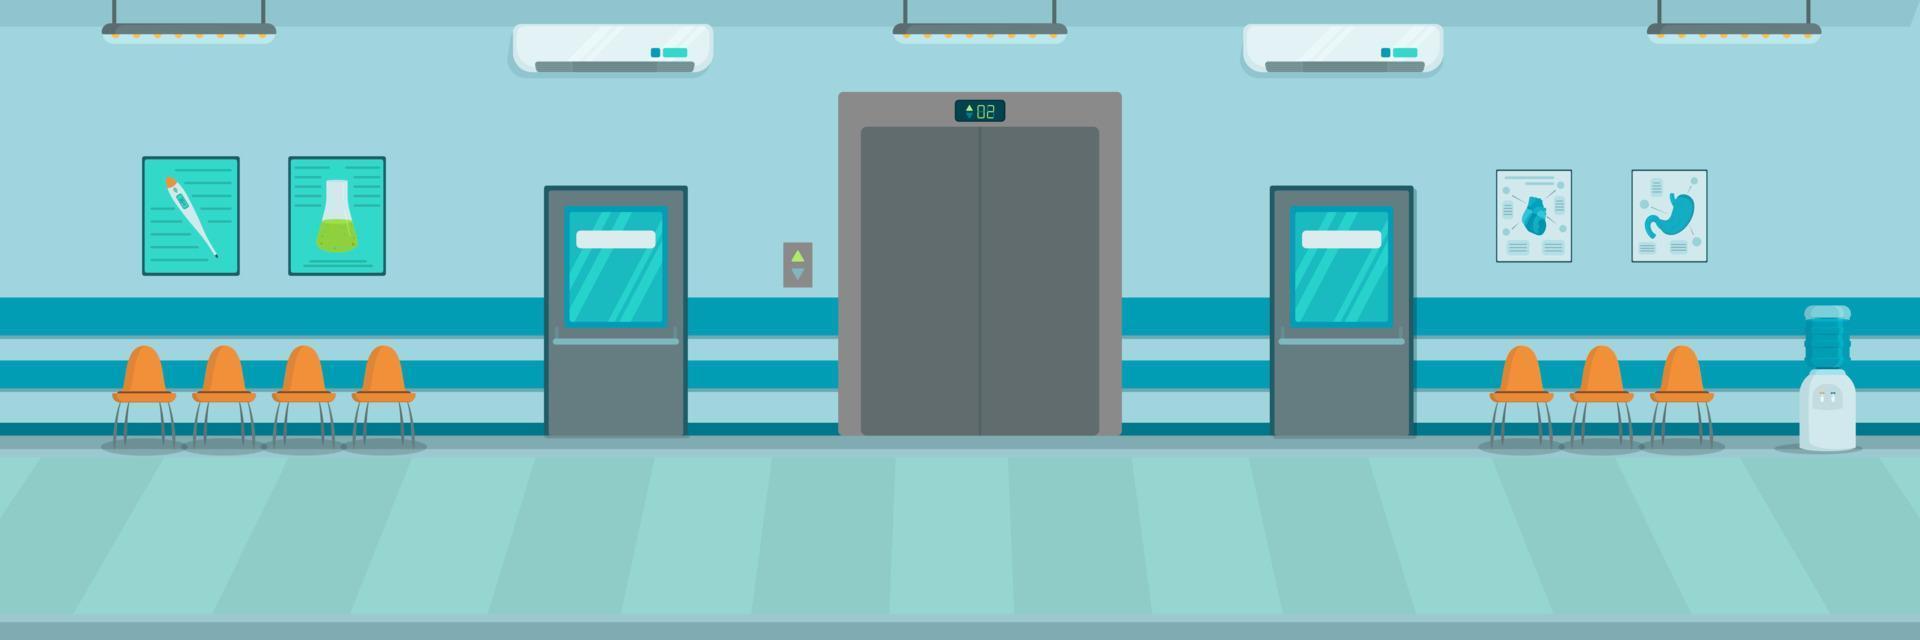 vektorillustration der krankenhaushalle. Korridor einer medizinischen Einrichtung. Hintergrund Innenraum. vektor